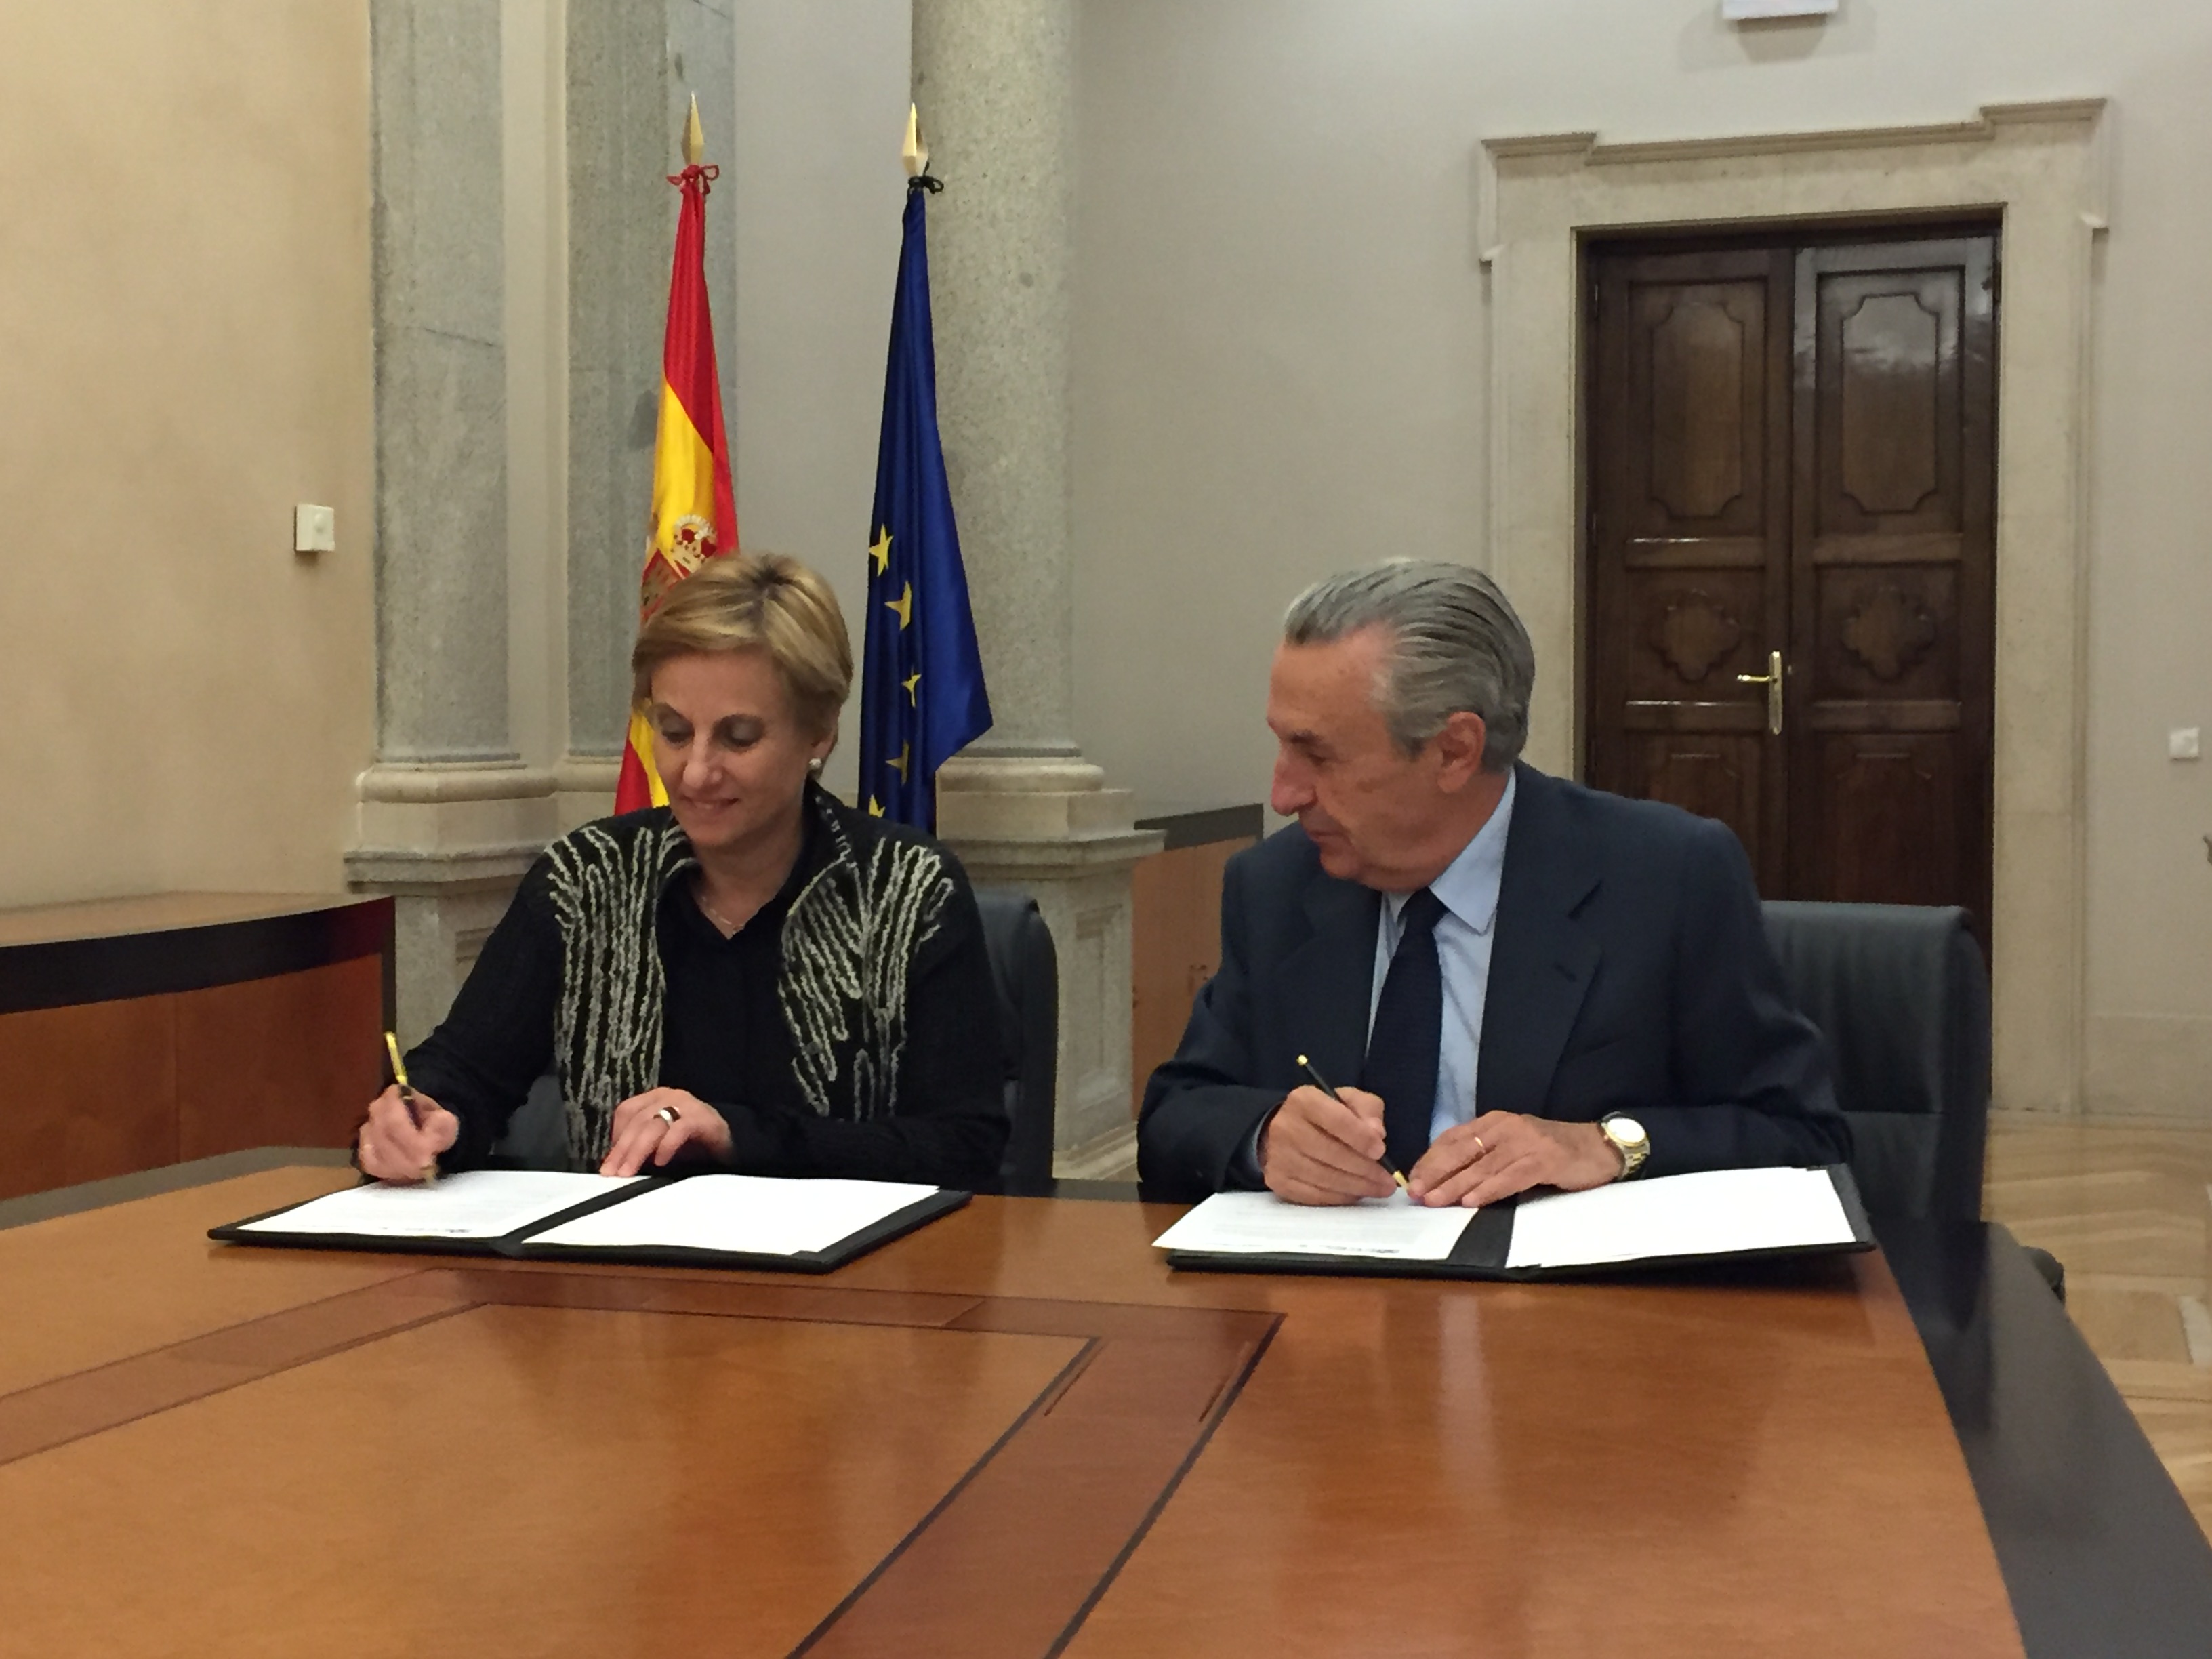 El presidente de la CNMC, José María Marín Quemada, y la consejera de Desarrollo Económico e Innovación del Gobierno de La Rioja, Leonor González Menorca, han firmado el acuerdo de colaboración en la sede de la CNMC.